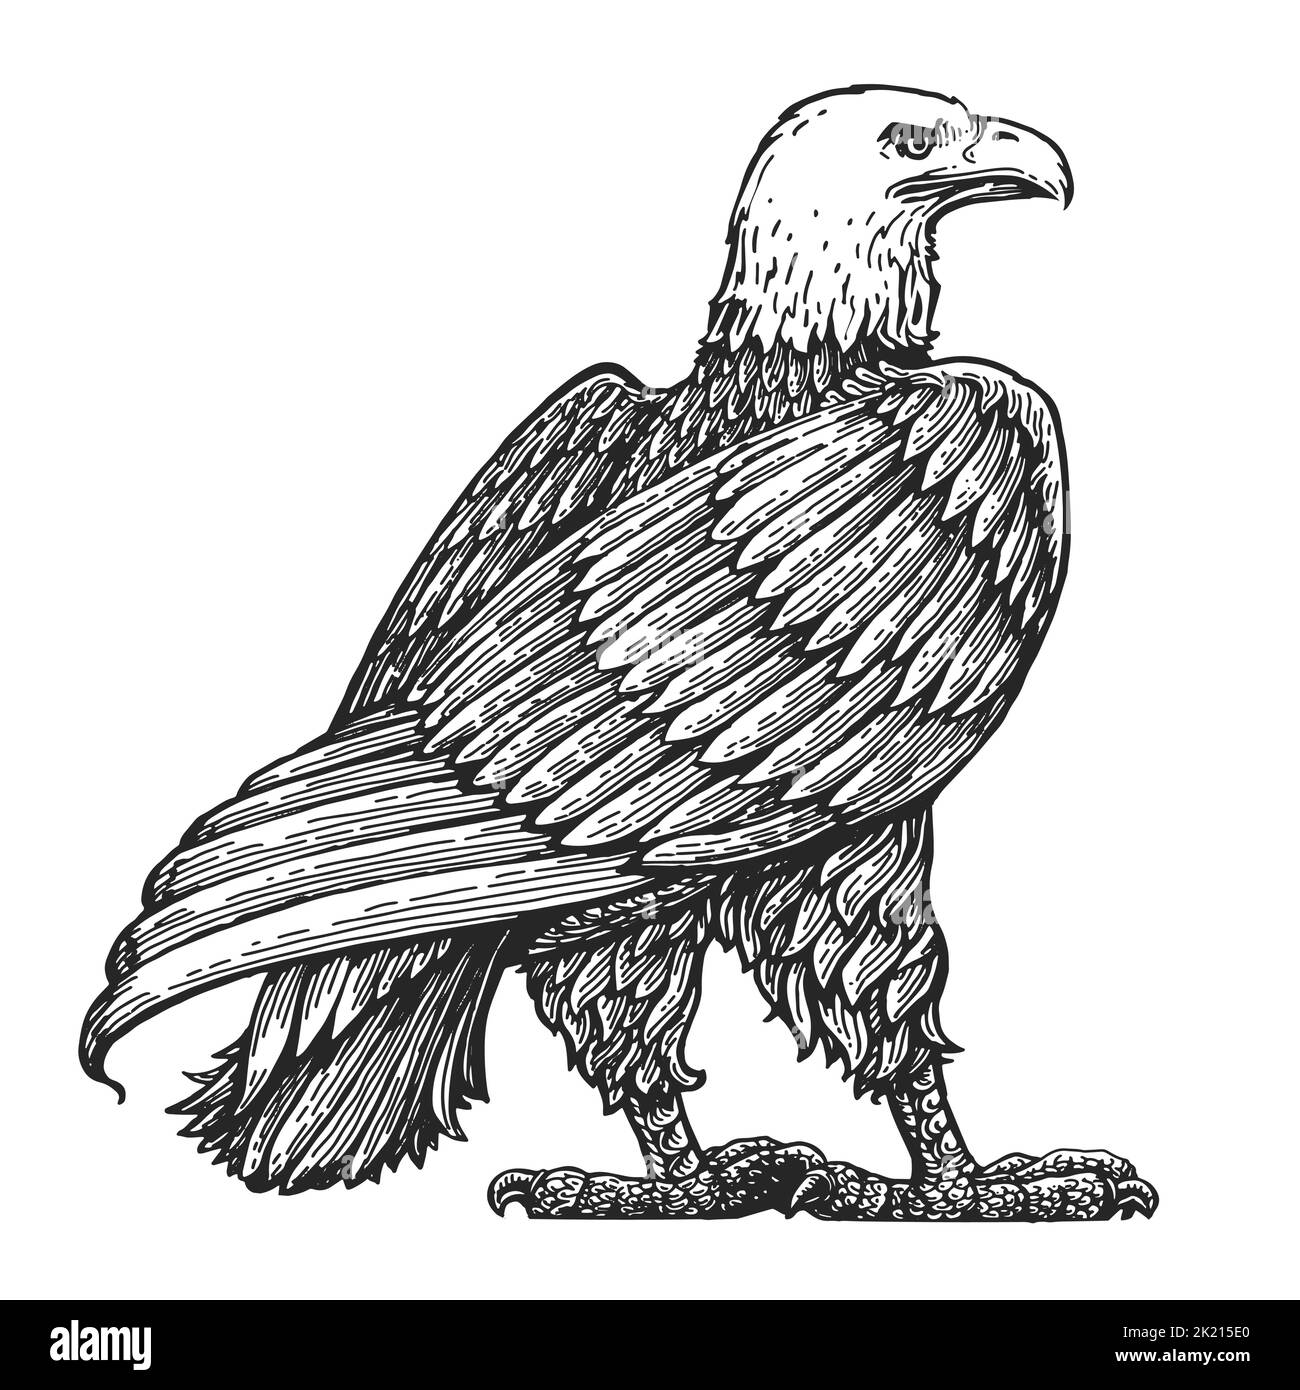 Weißkopfseeadler stehend lebensgroß isoliert auf Weiß. Handgezeichnete Skizze Vogel Vektor Illustration in Vintage Gravur Stil Stock Vektor